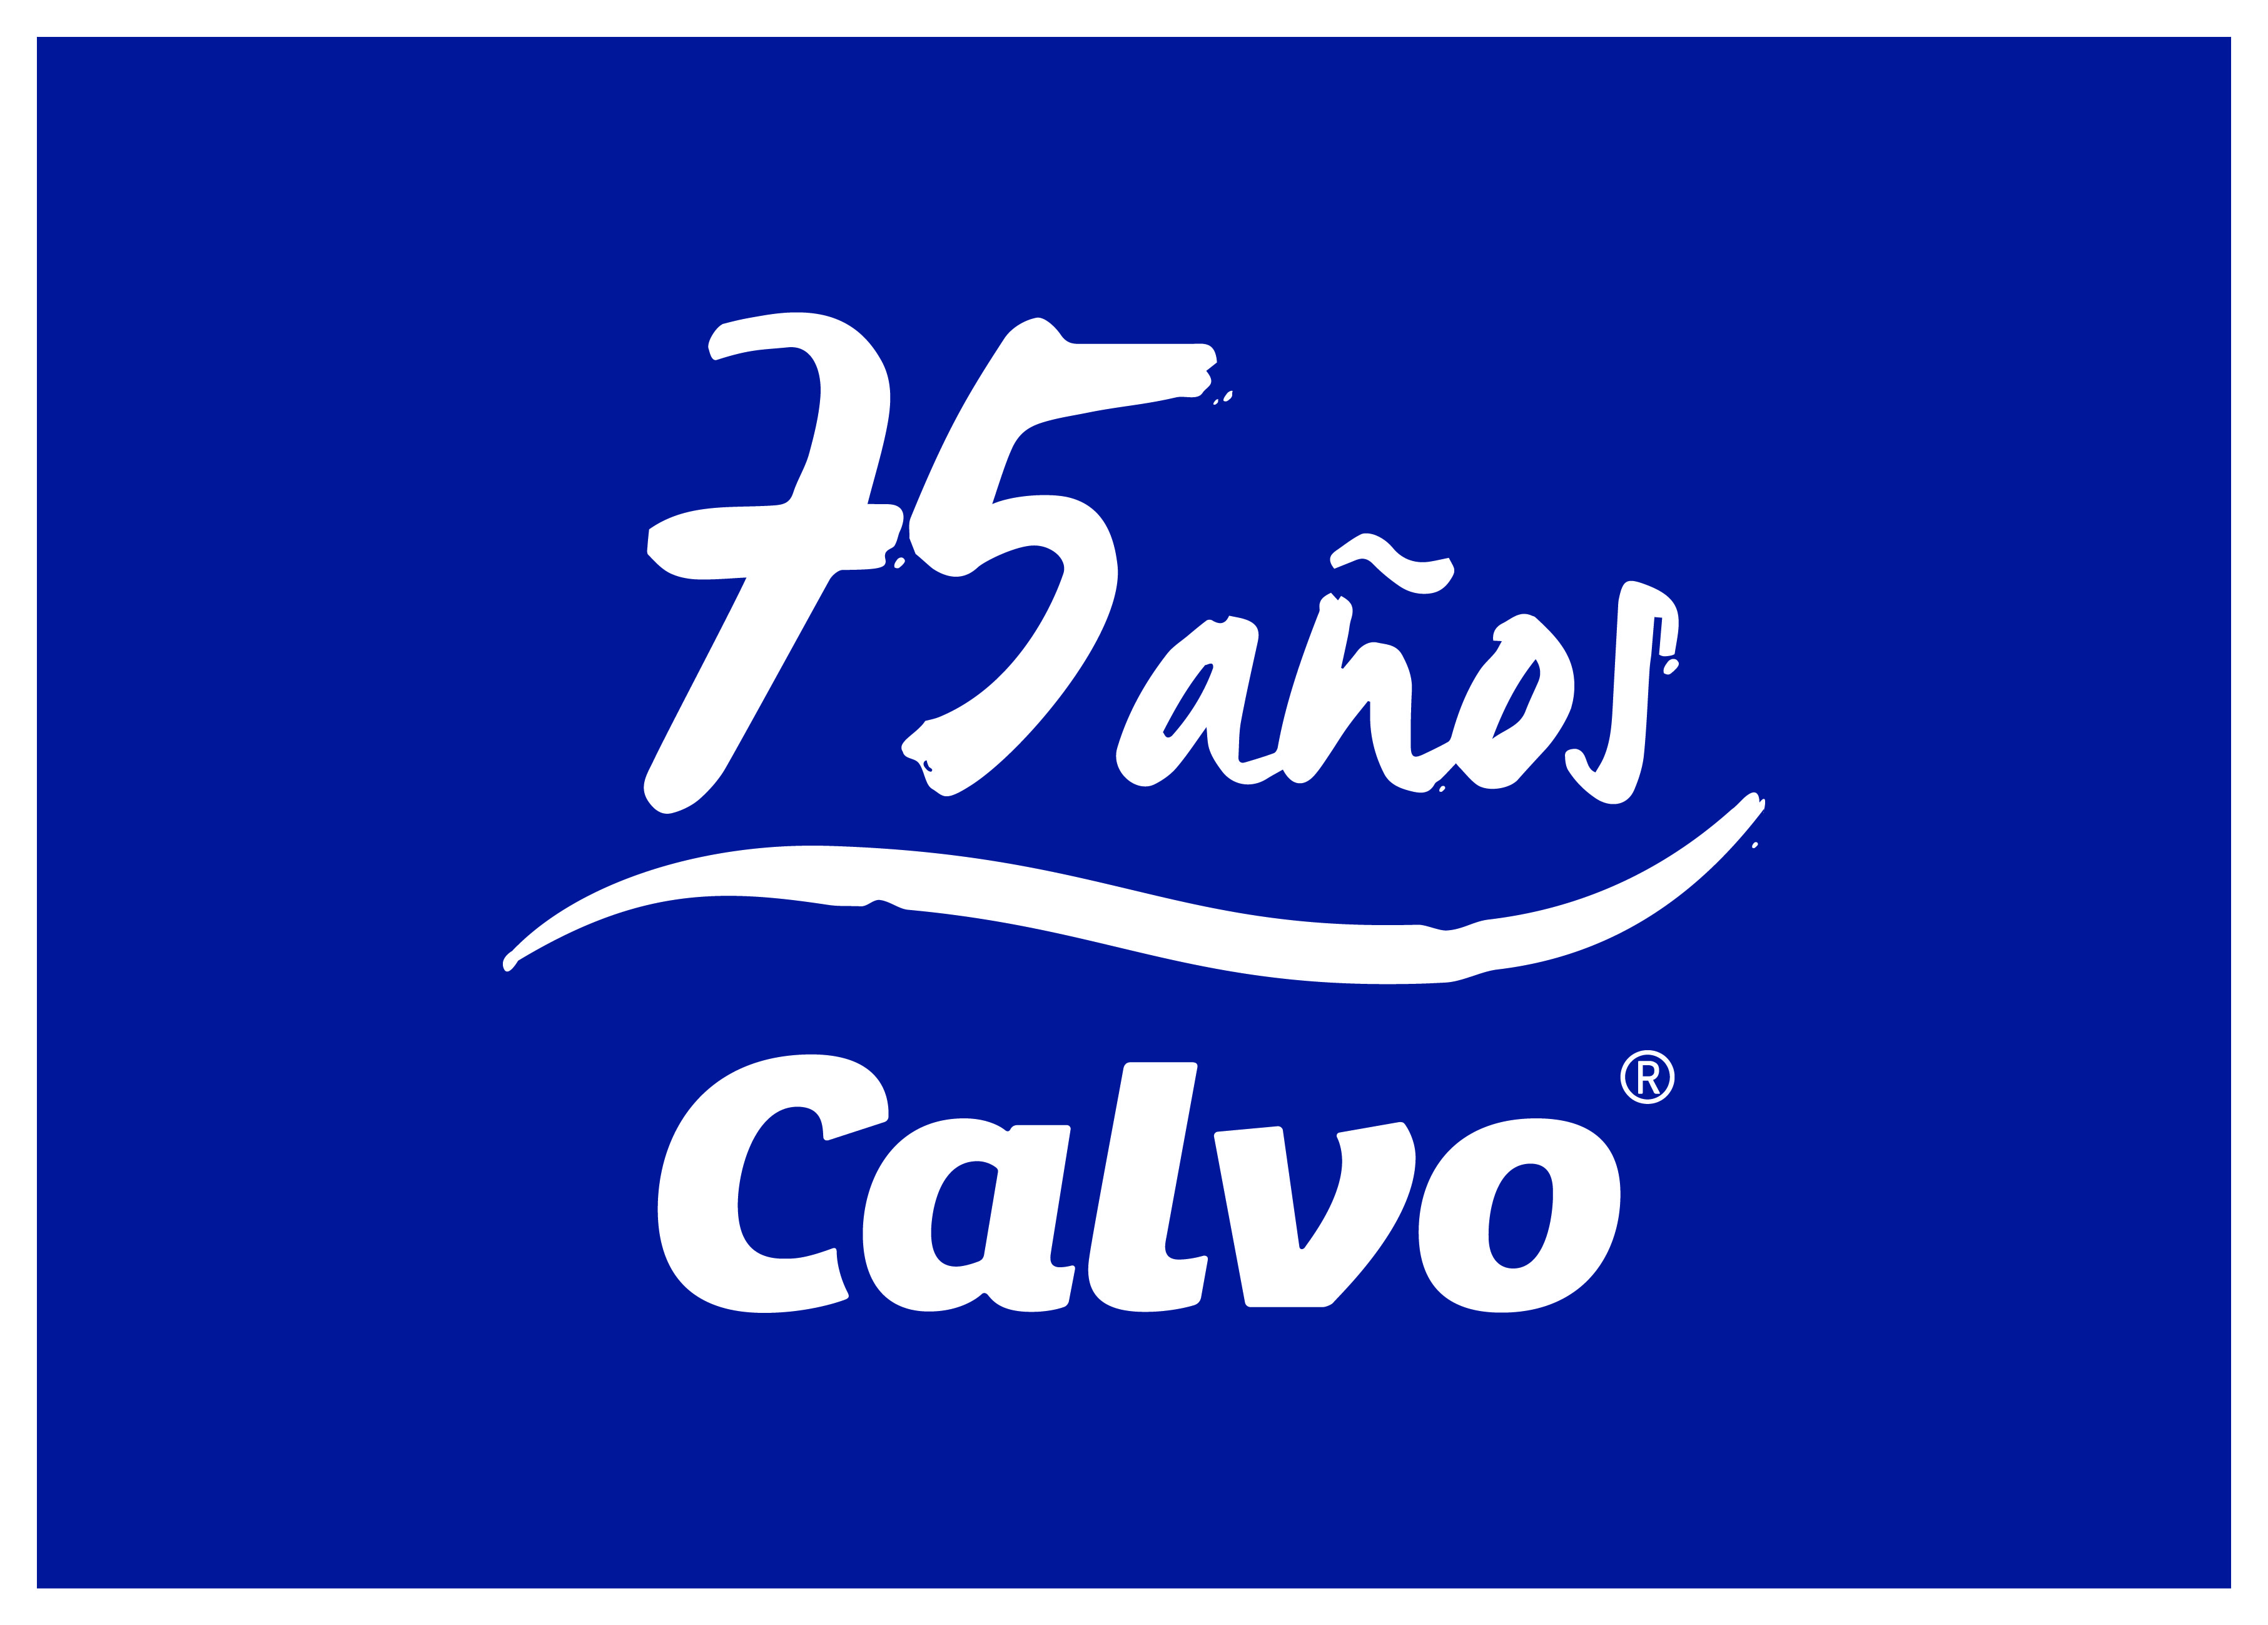 Calvo celebra 75 años con crecimiento en ventas y expansión regional